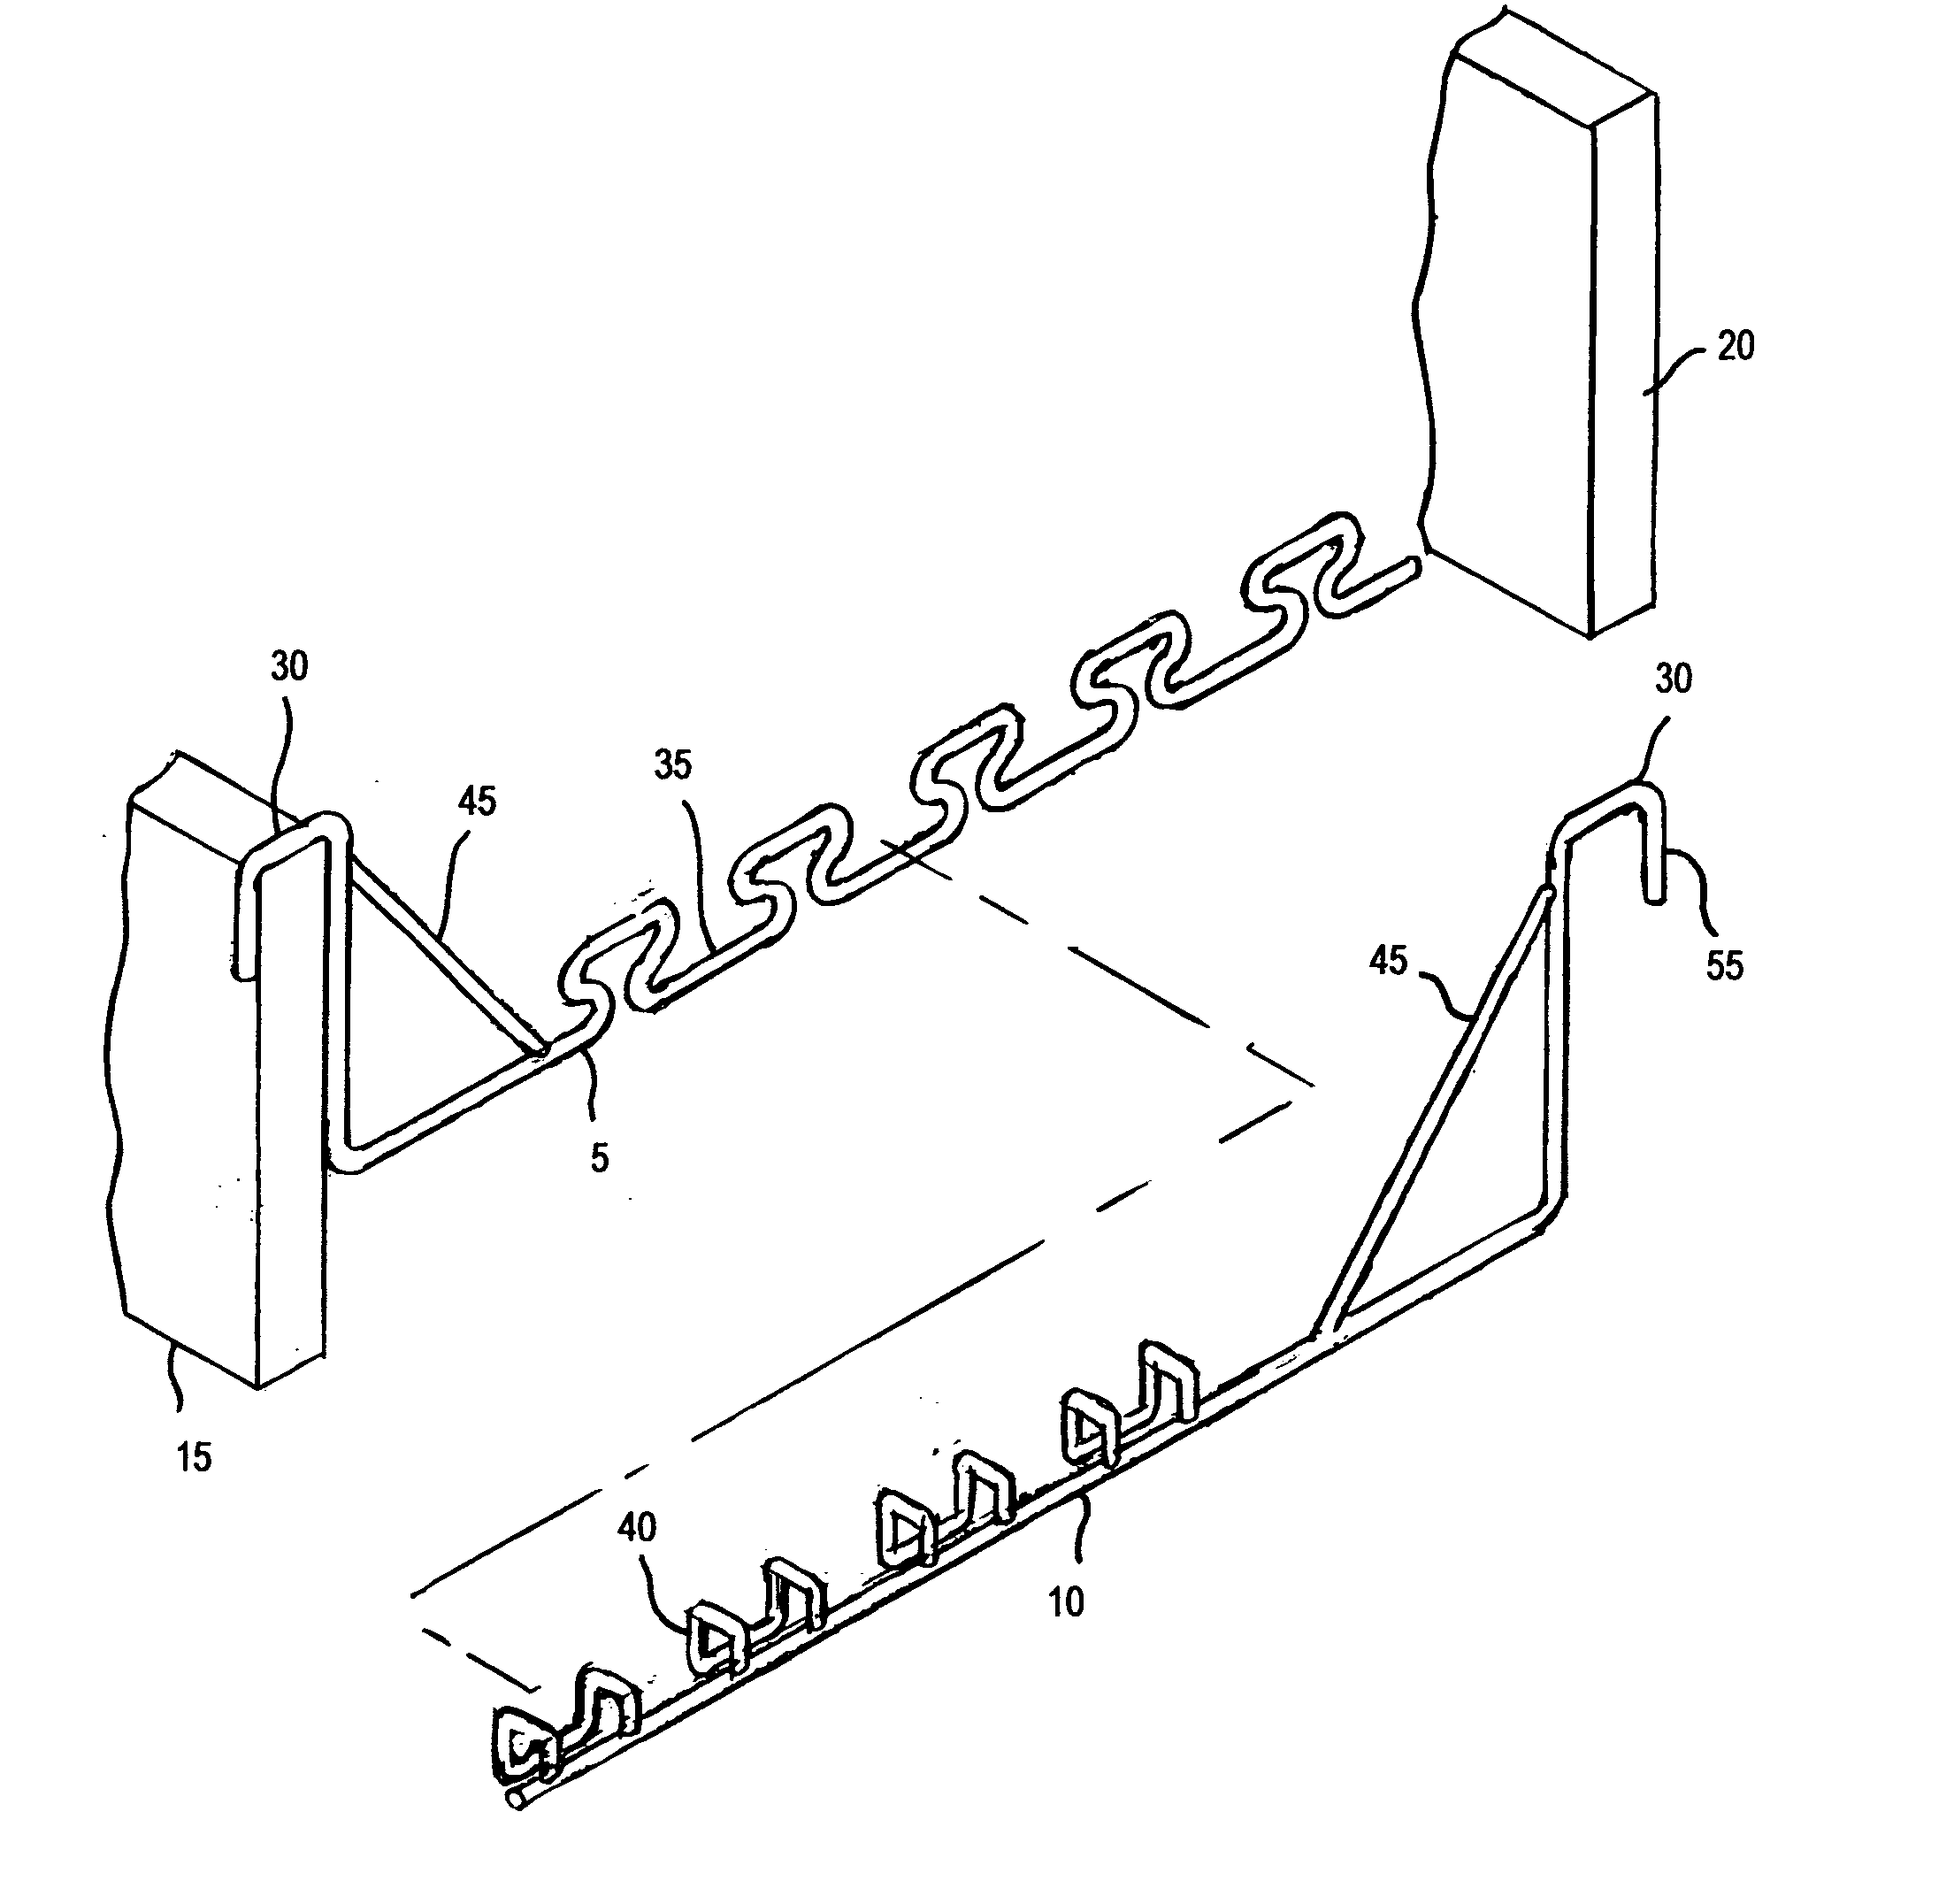 Adjustable support bracket for concrete reinforcing bars